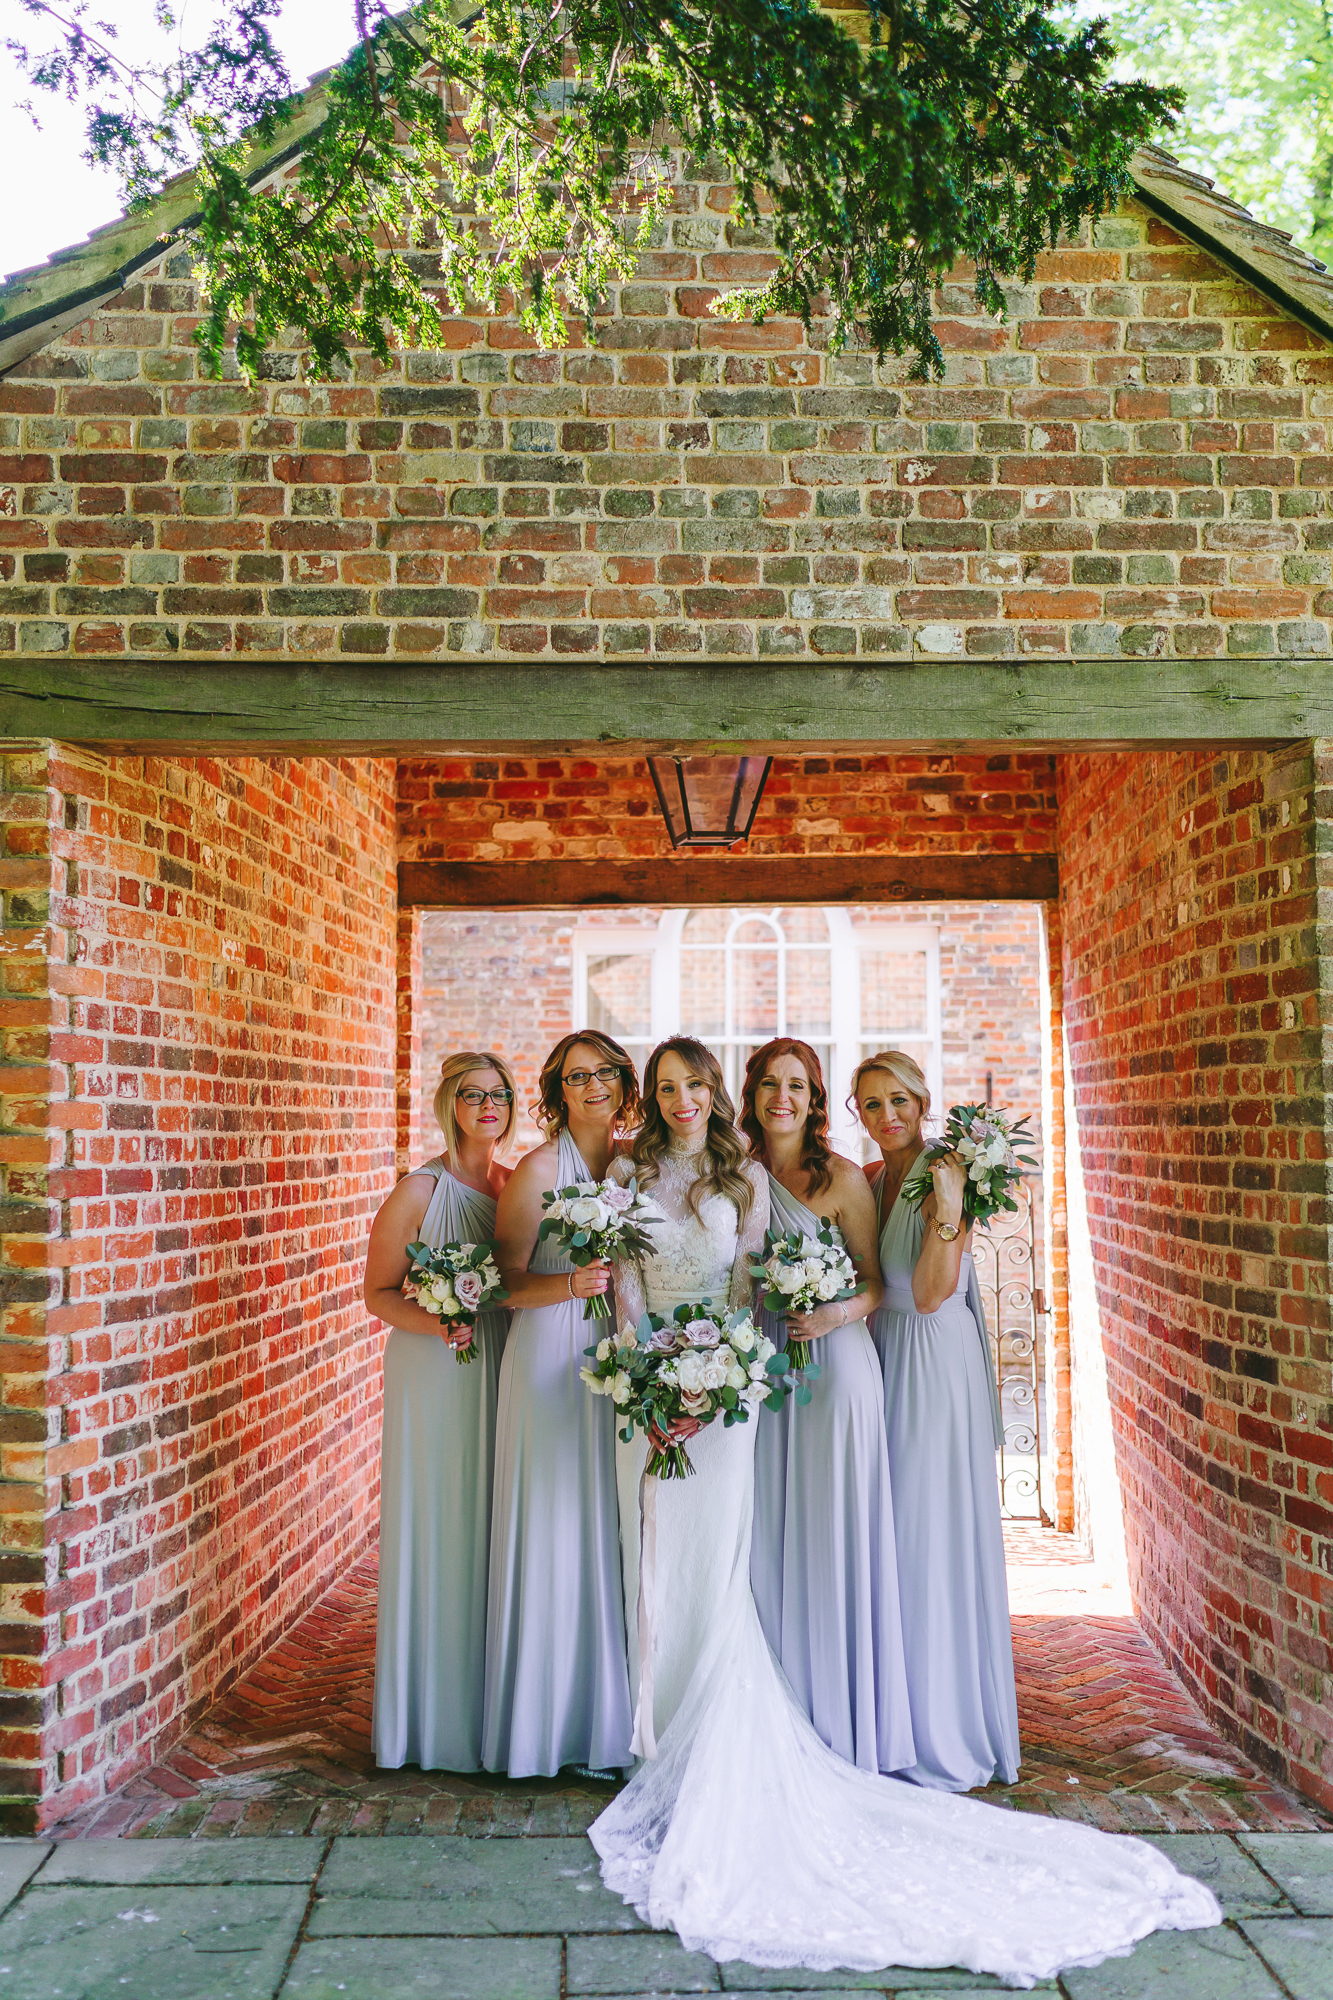 Pale blue bridesmaids dresses